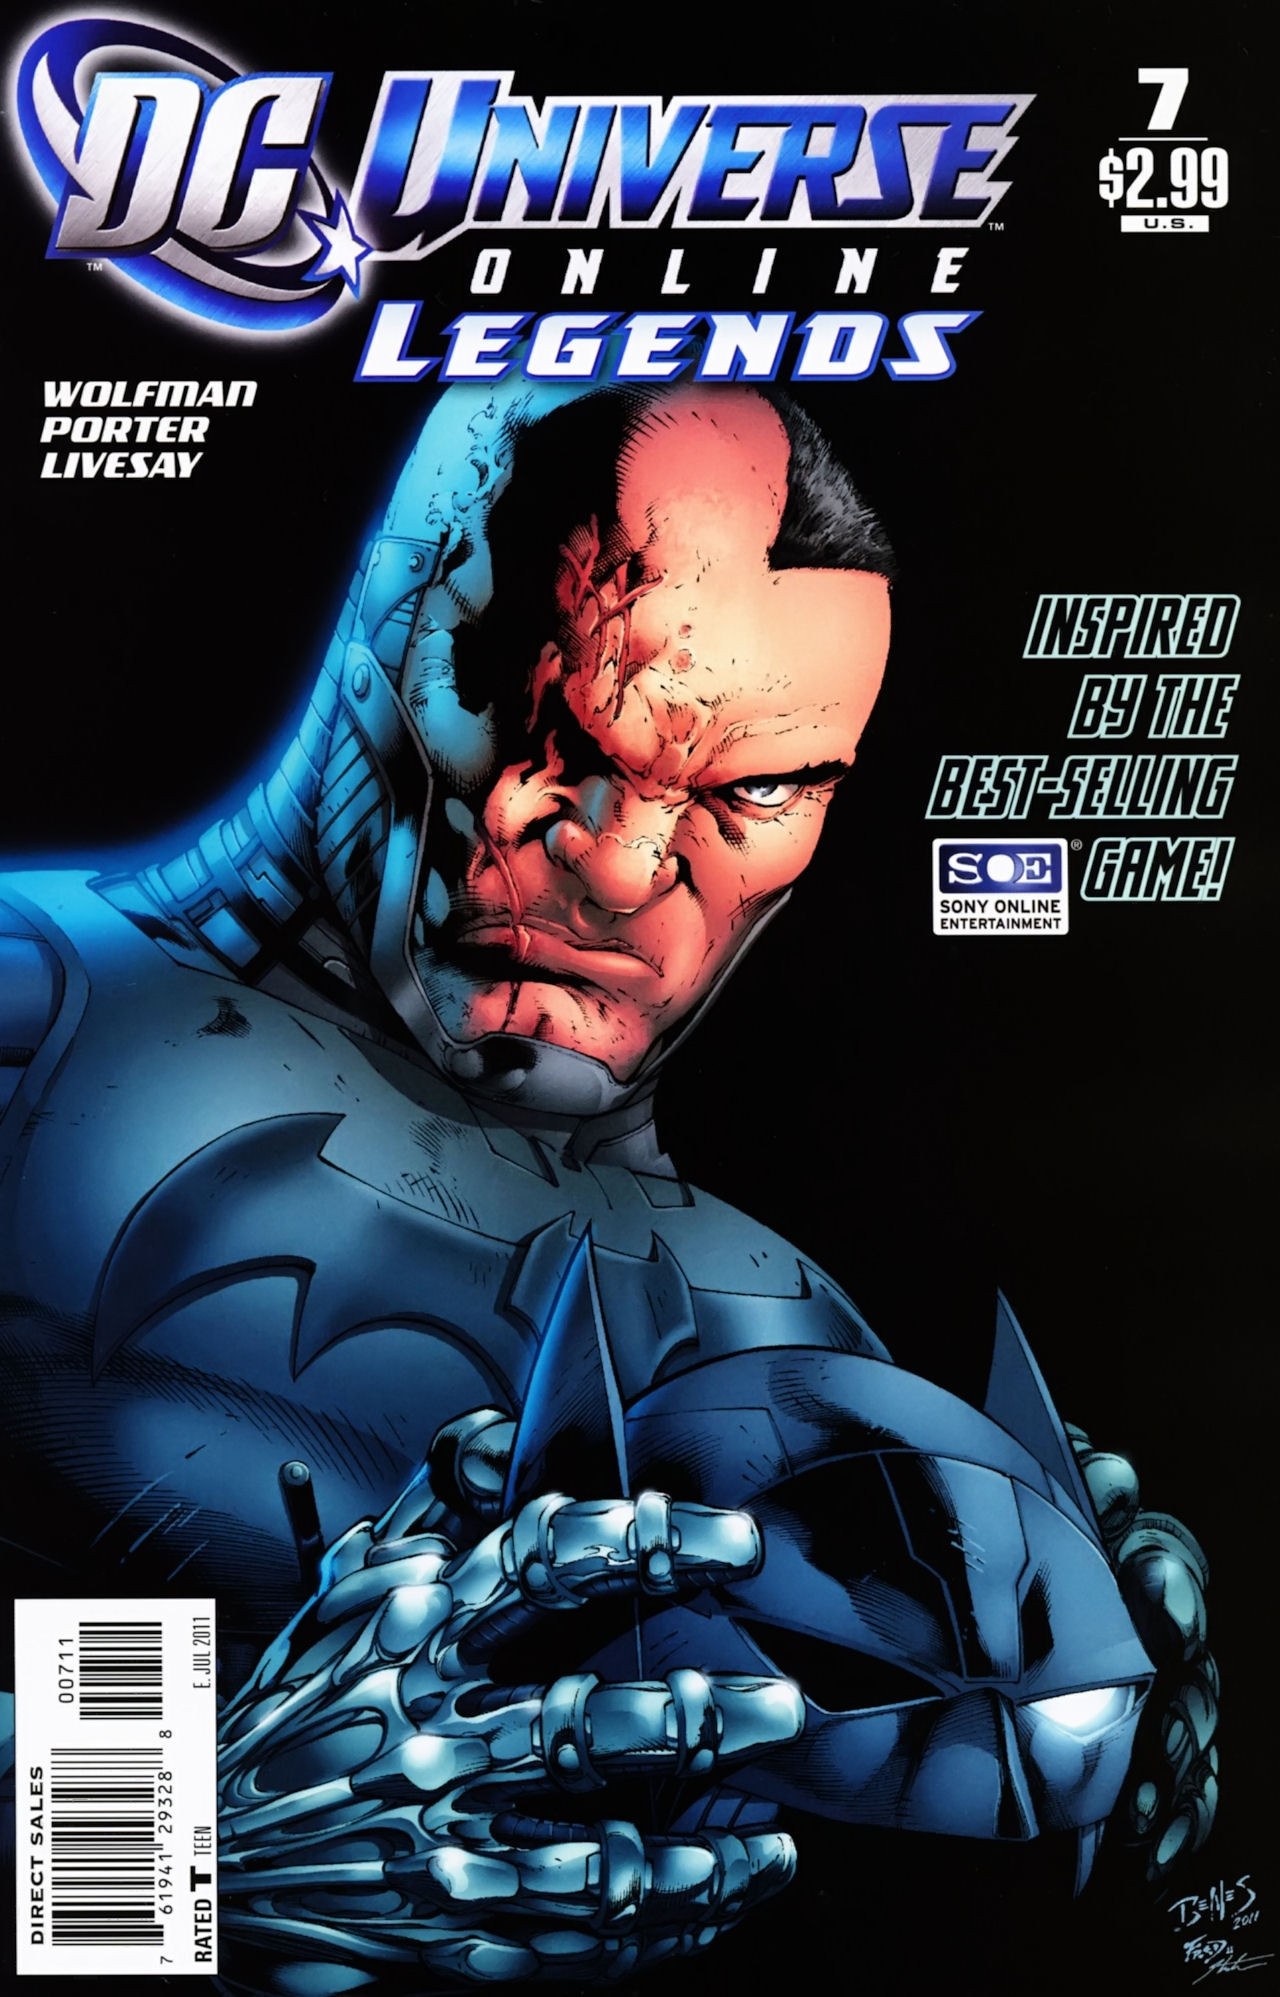 DC Universe Online Legends Vol. 1 #7